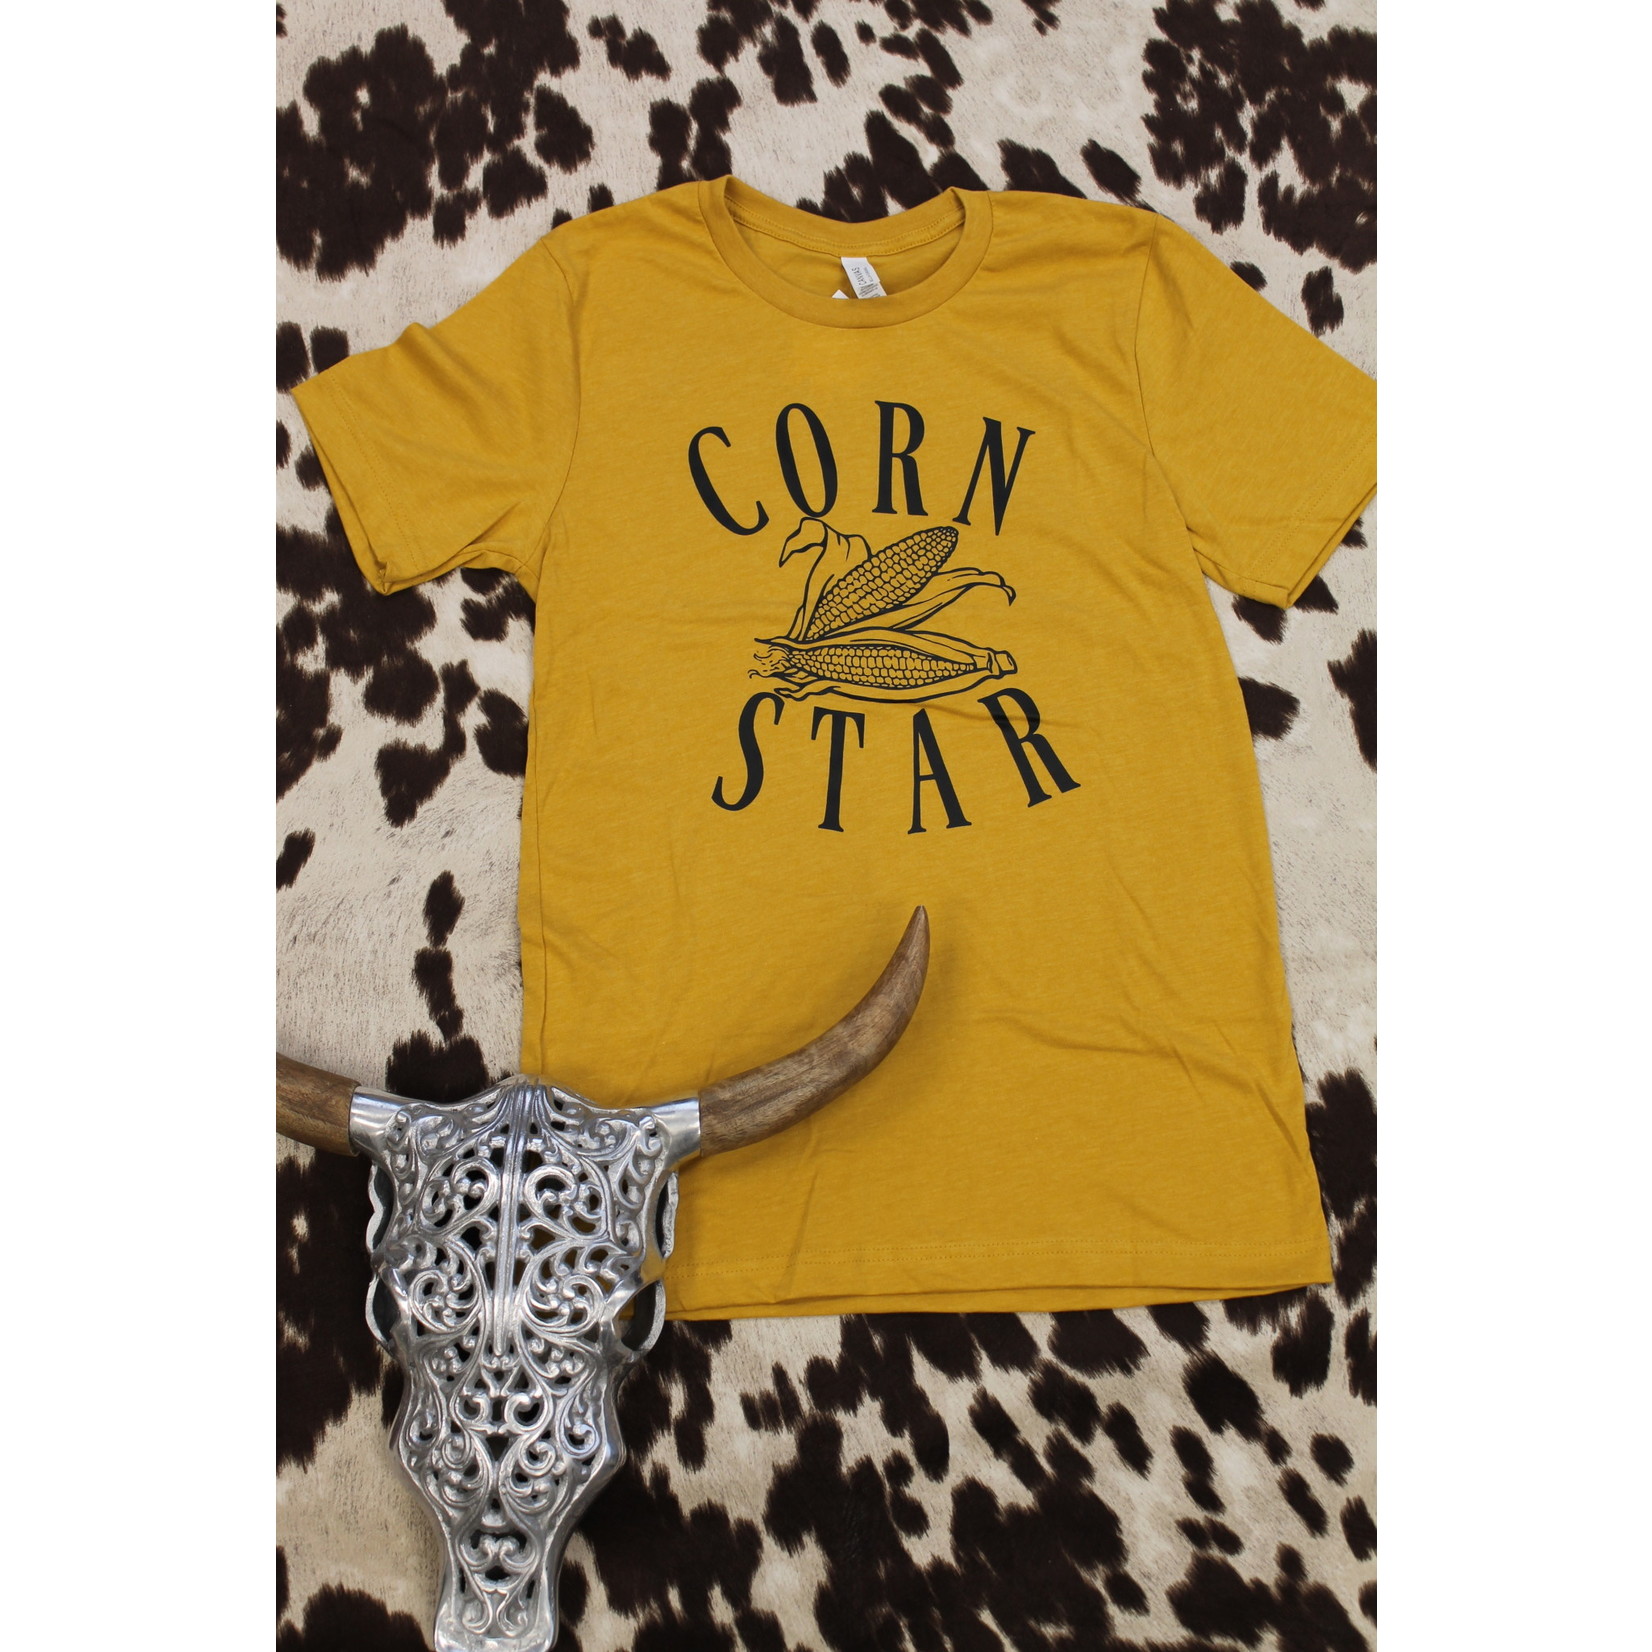 Corn Star T-Shirt